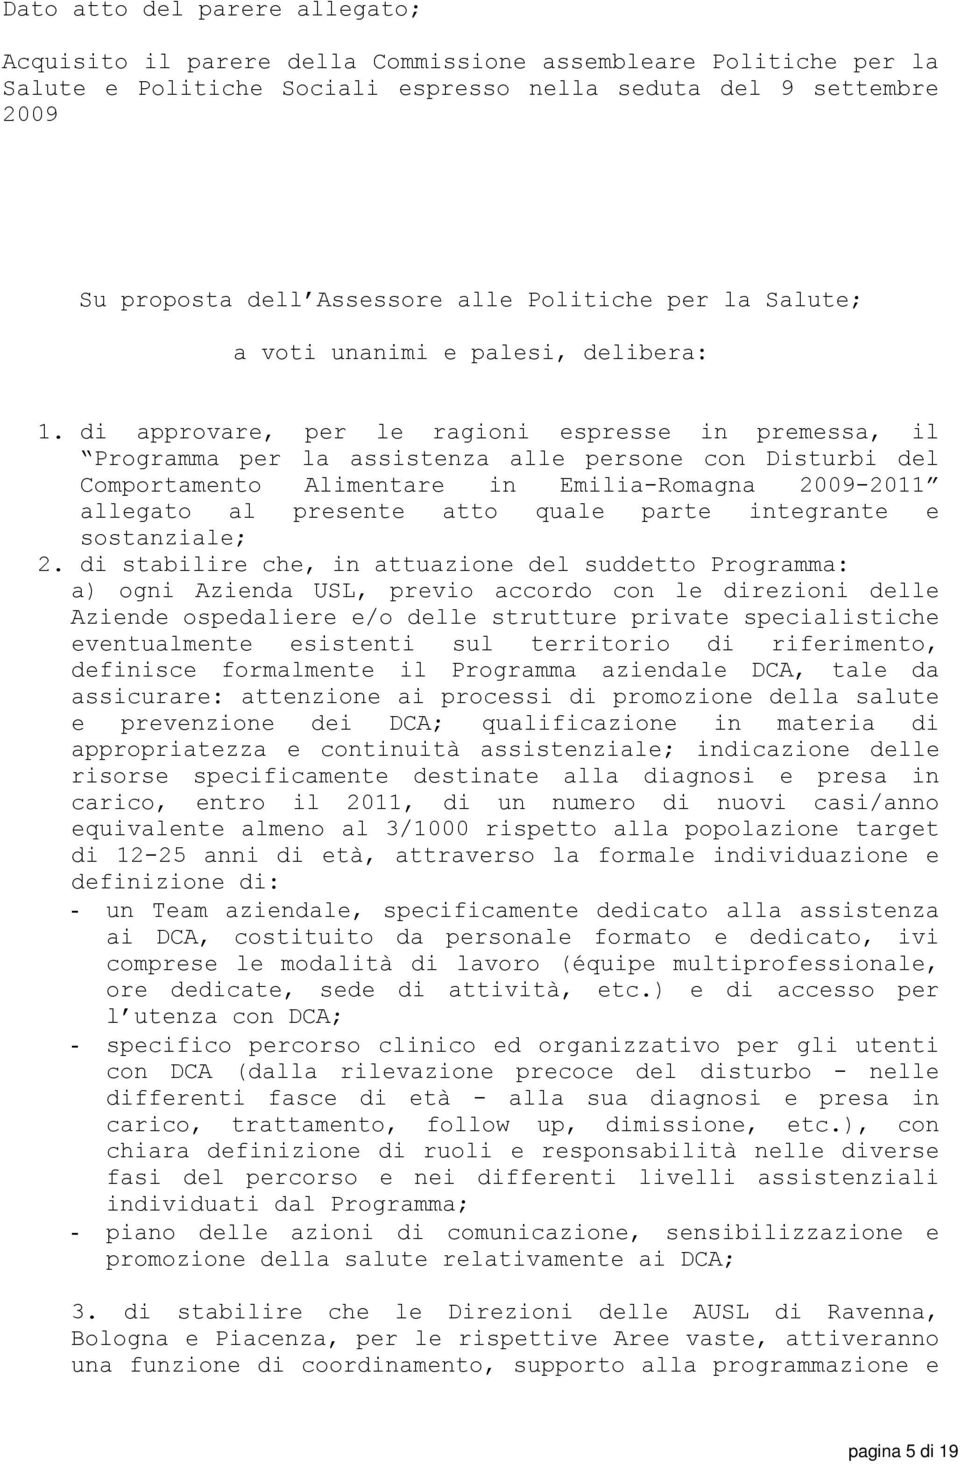 di approvare, per le ragioni espresse in premessa, il Programma per la assistenza alle persone con Disturbi del Comportamento Alimentare in Emilia-Romagna 2009-2011 allegato al presente atto quale